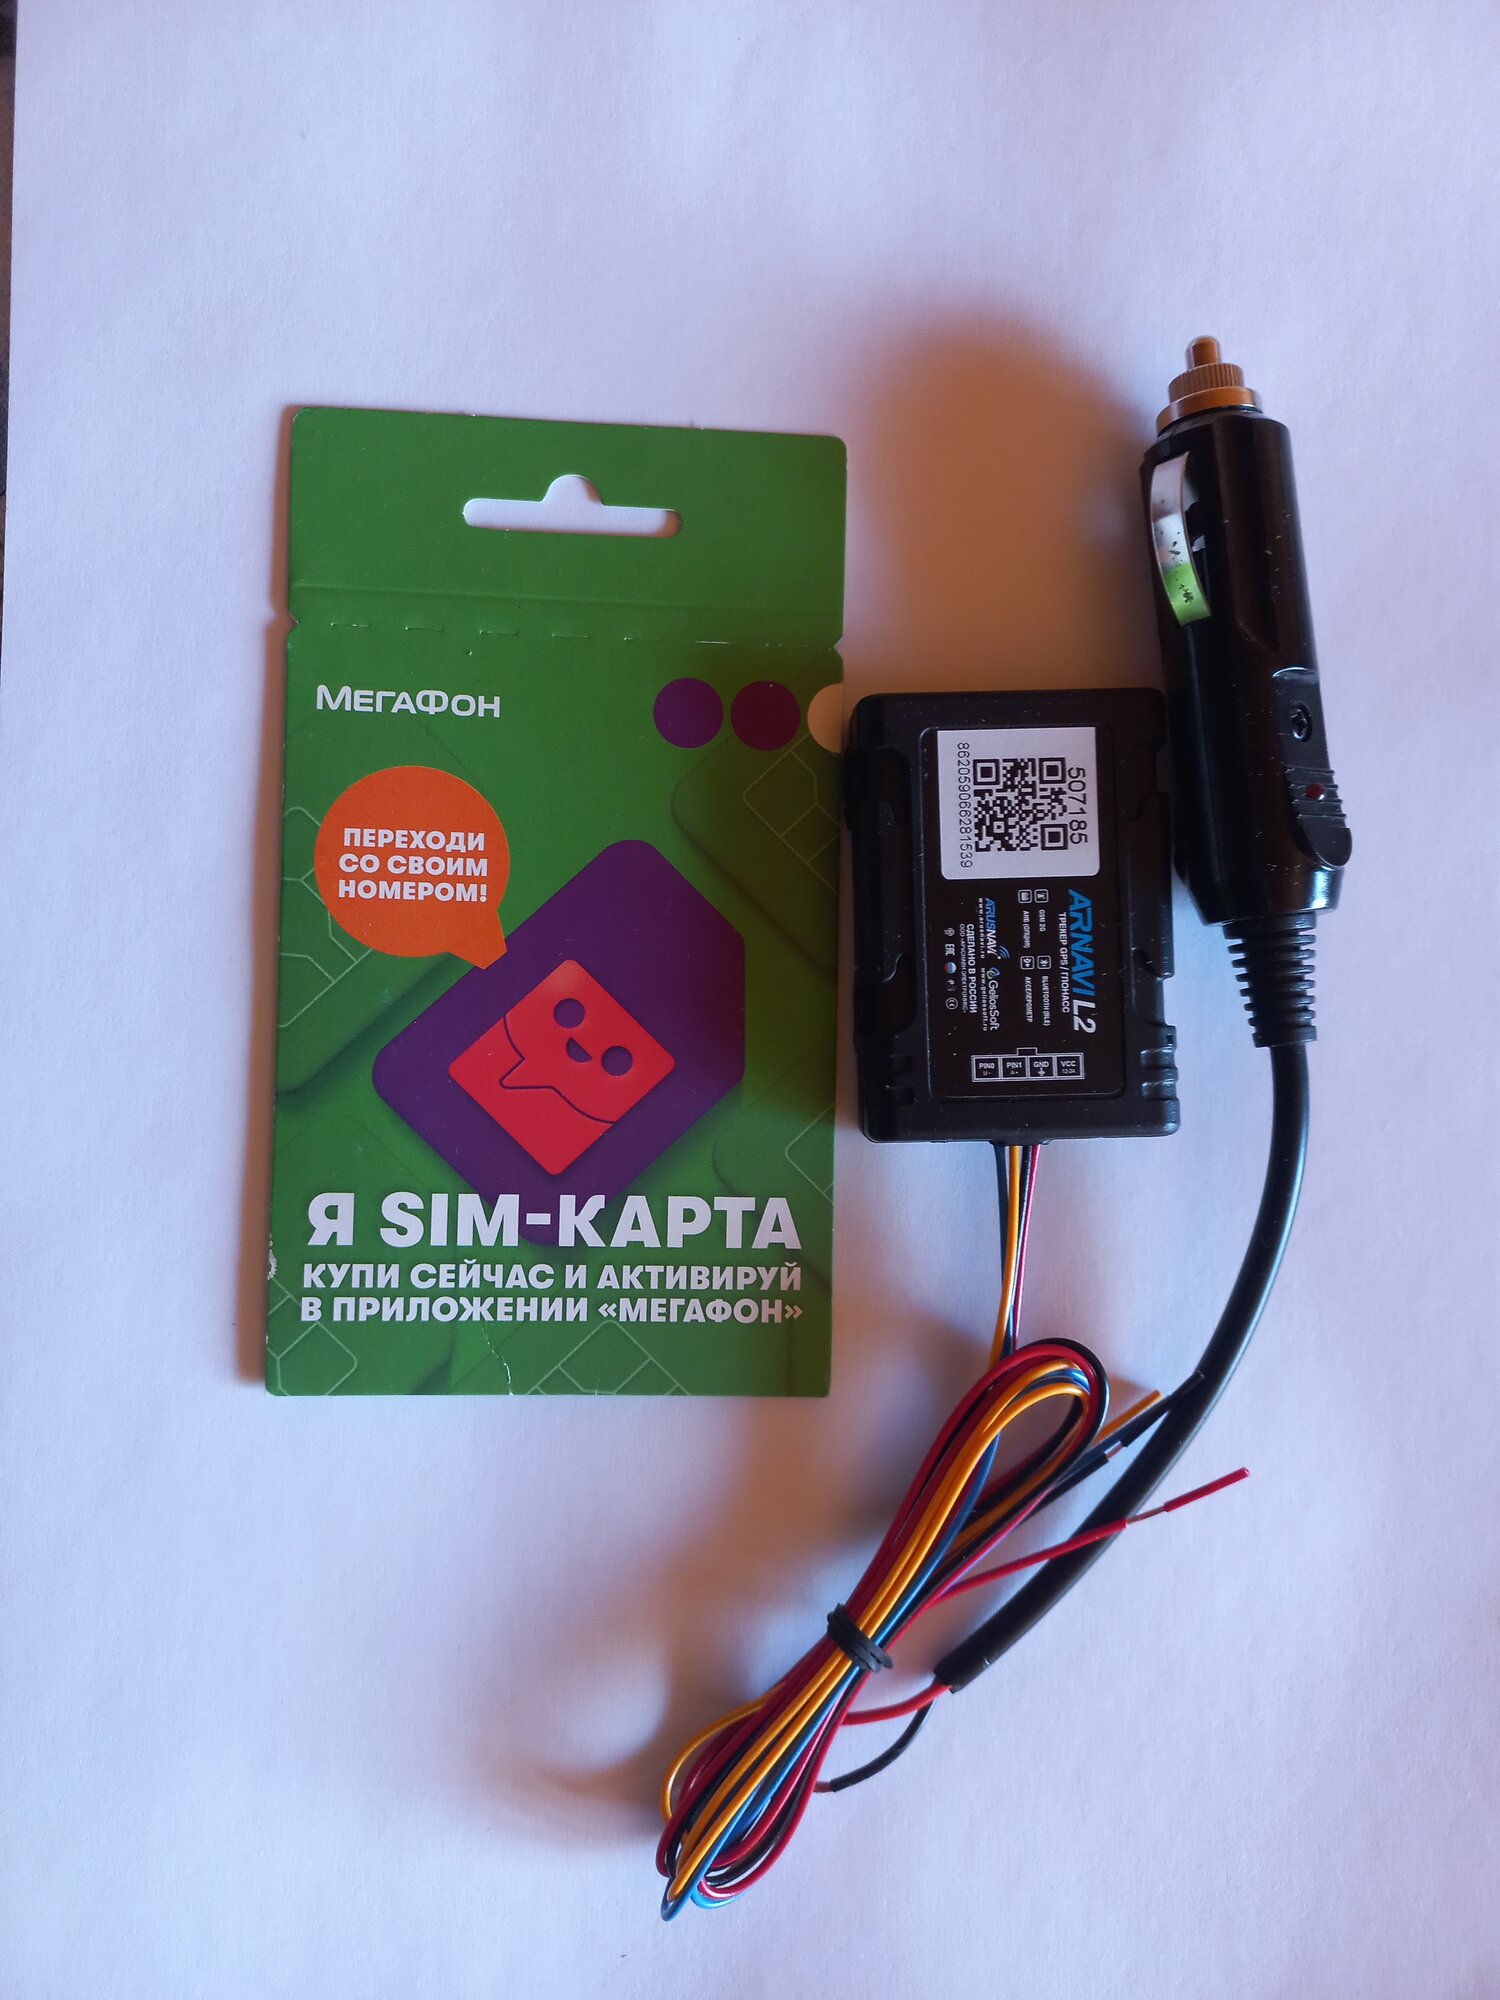 Рнис GPS Глонасс трекер УМКа310LJ в прикуриватель без абонентской платы сим карта в комплекте